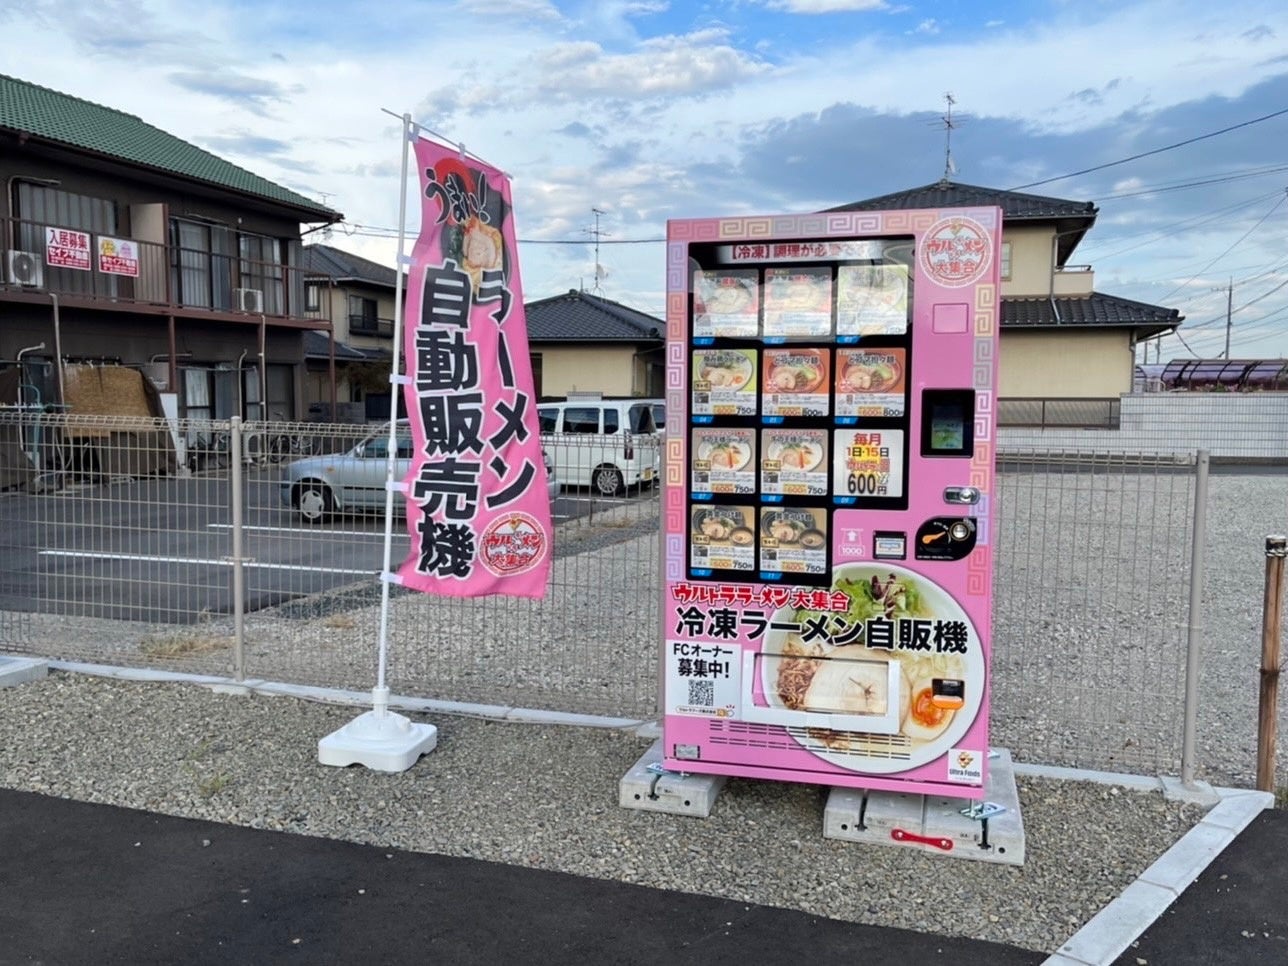 バターを楽しむ焼き菓子のブランド「ガレット オ ブール」 伊勢丹新宿店に期間限定で出店